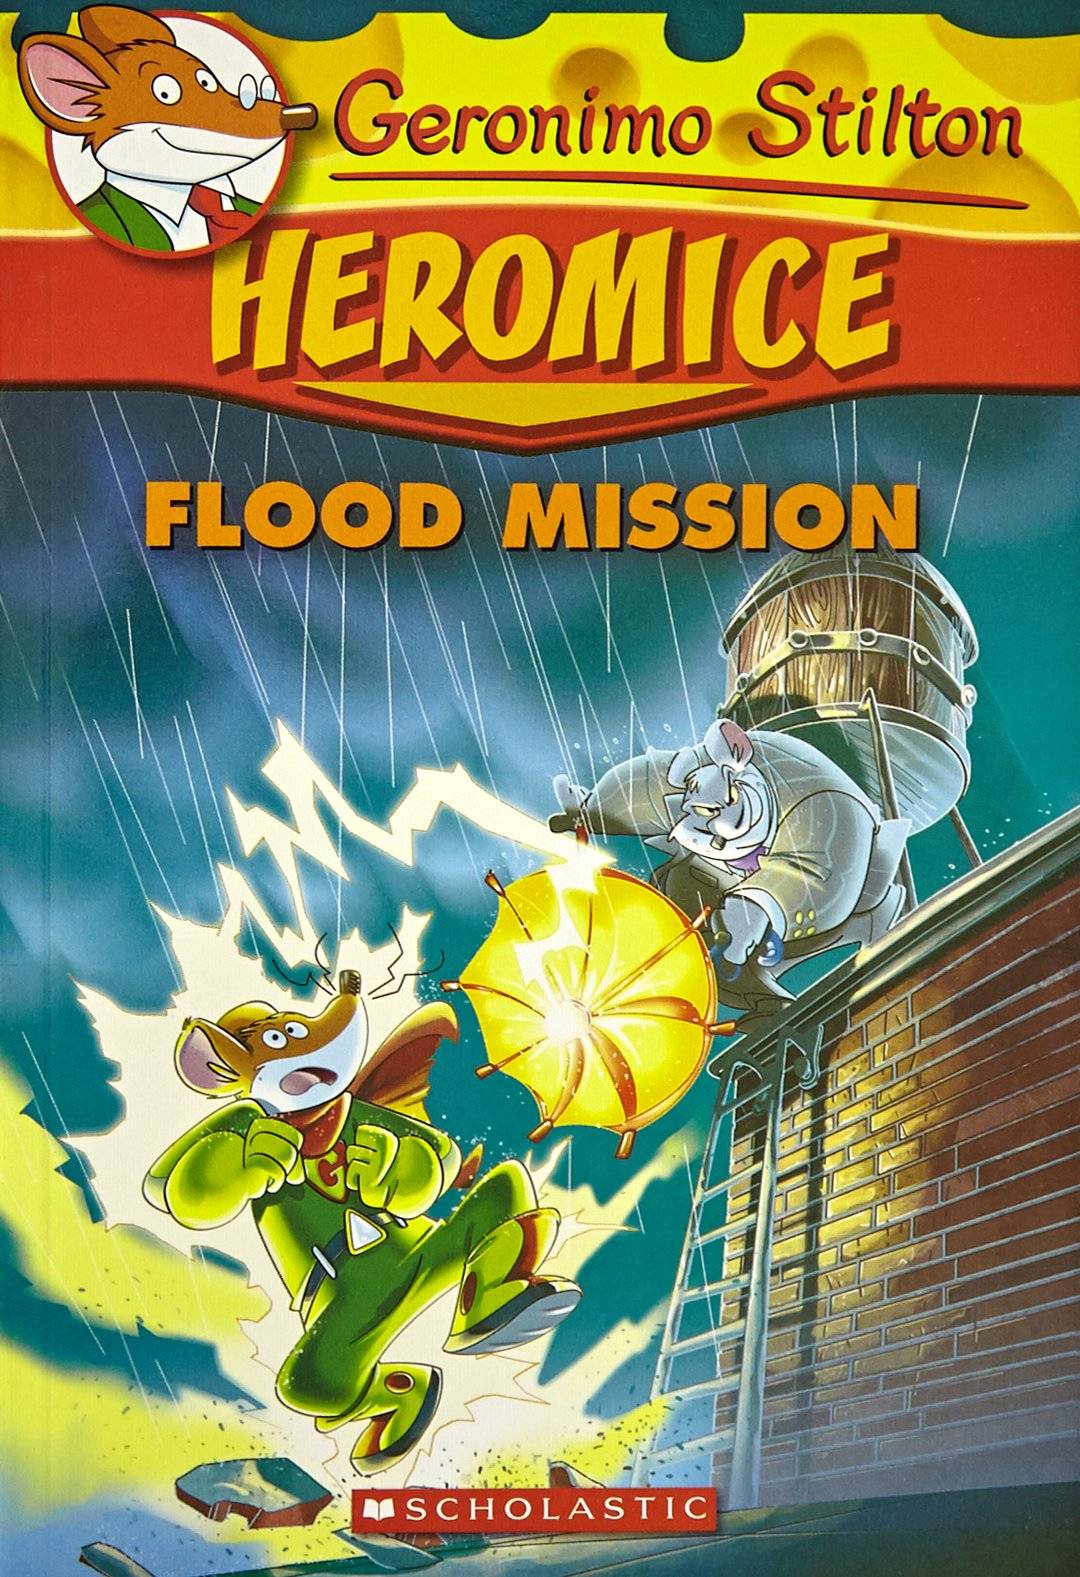 IMG : Geronimo Stilton Heromice Flood Mission